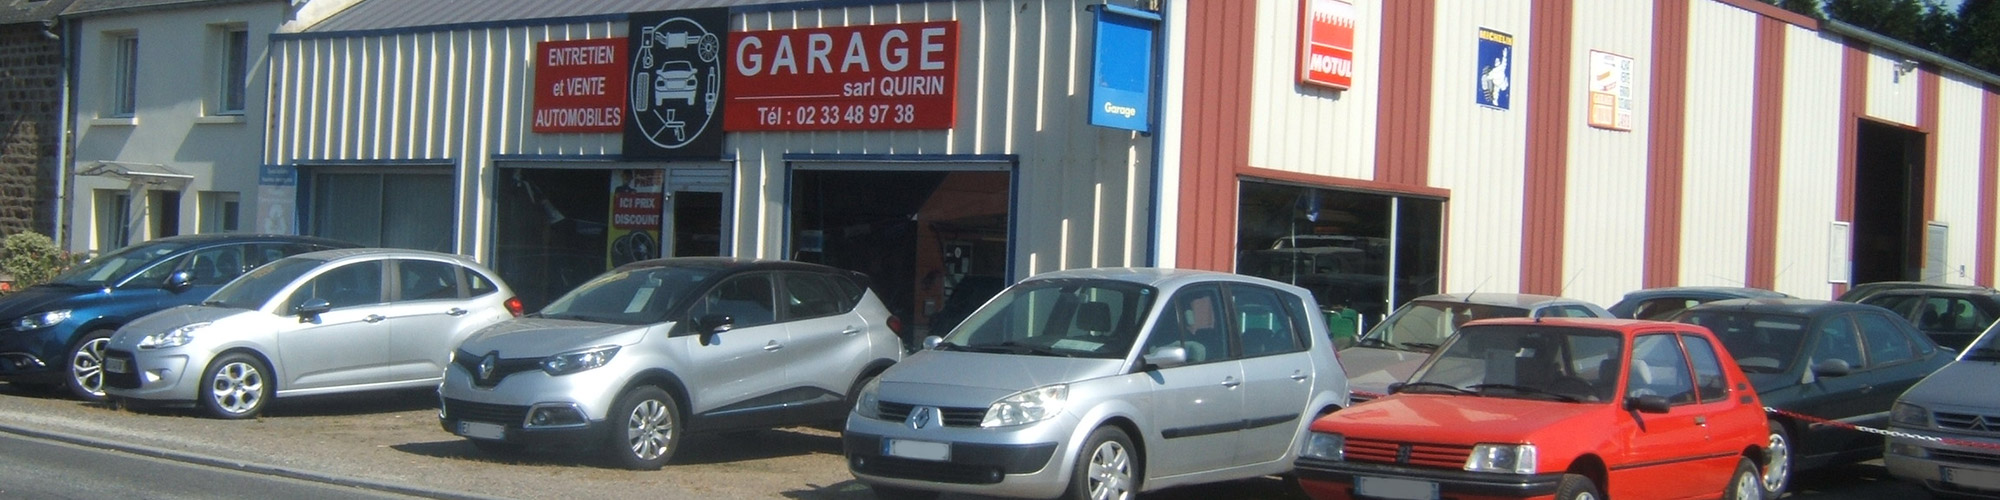 Garage mécanique tolerie peinture ventes occasions à la Chapelle Urée